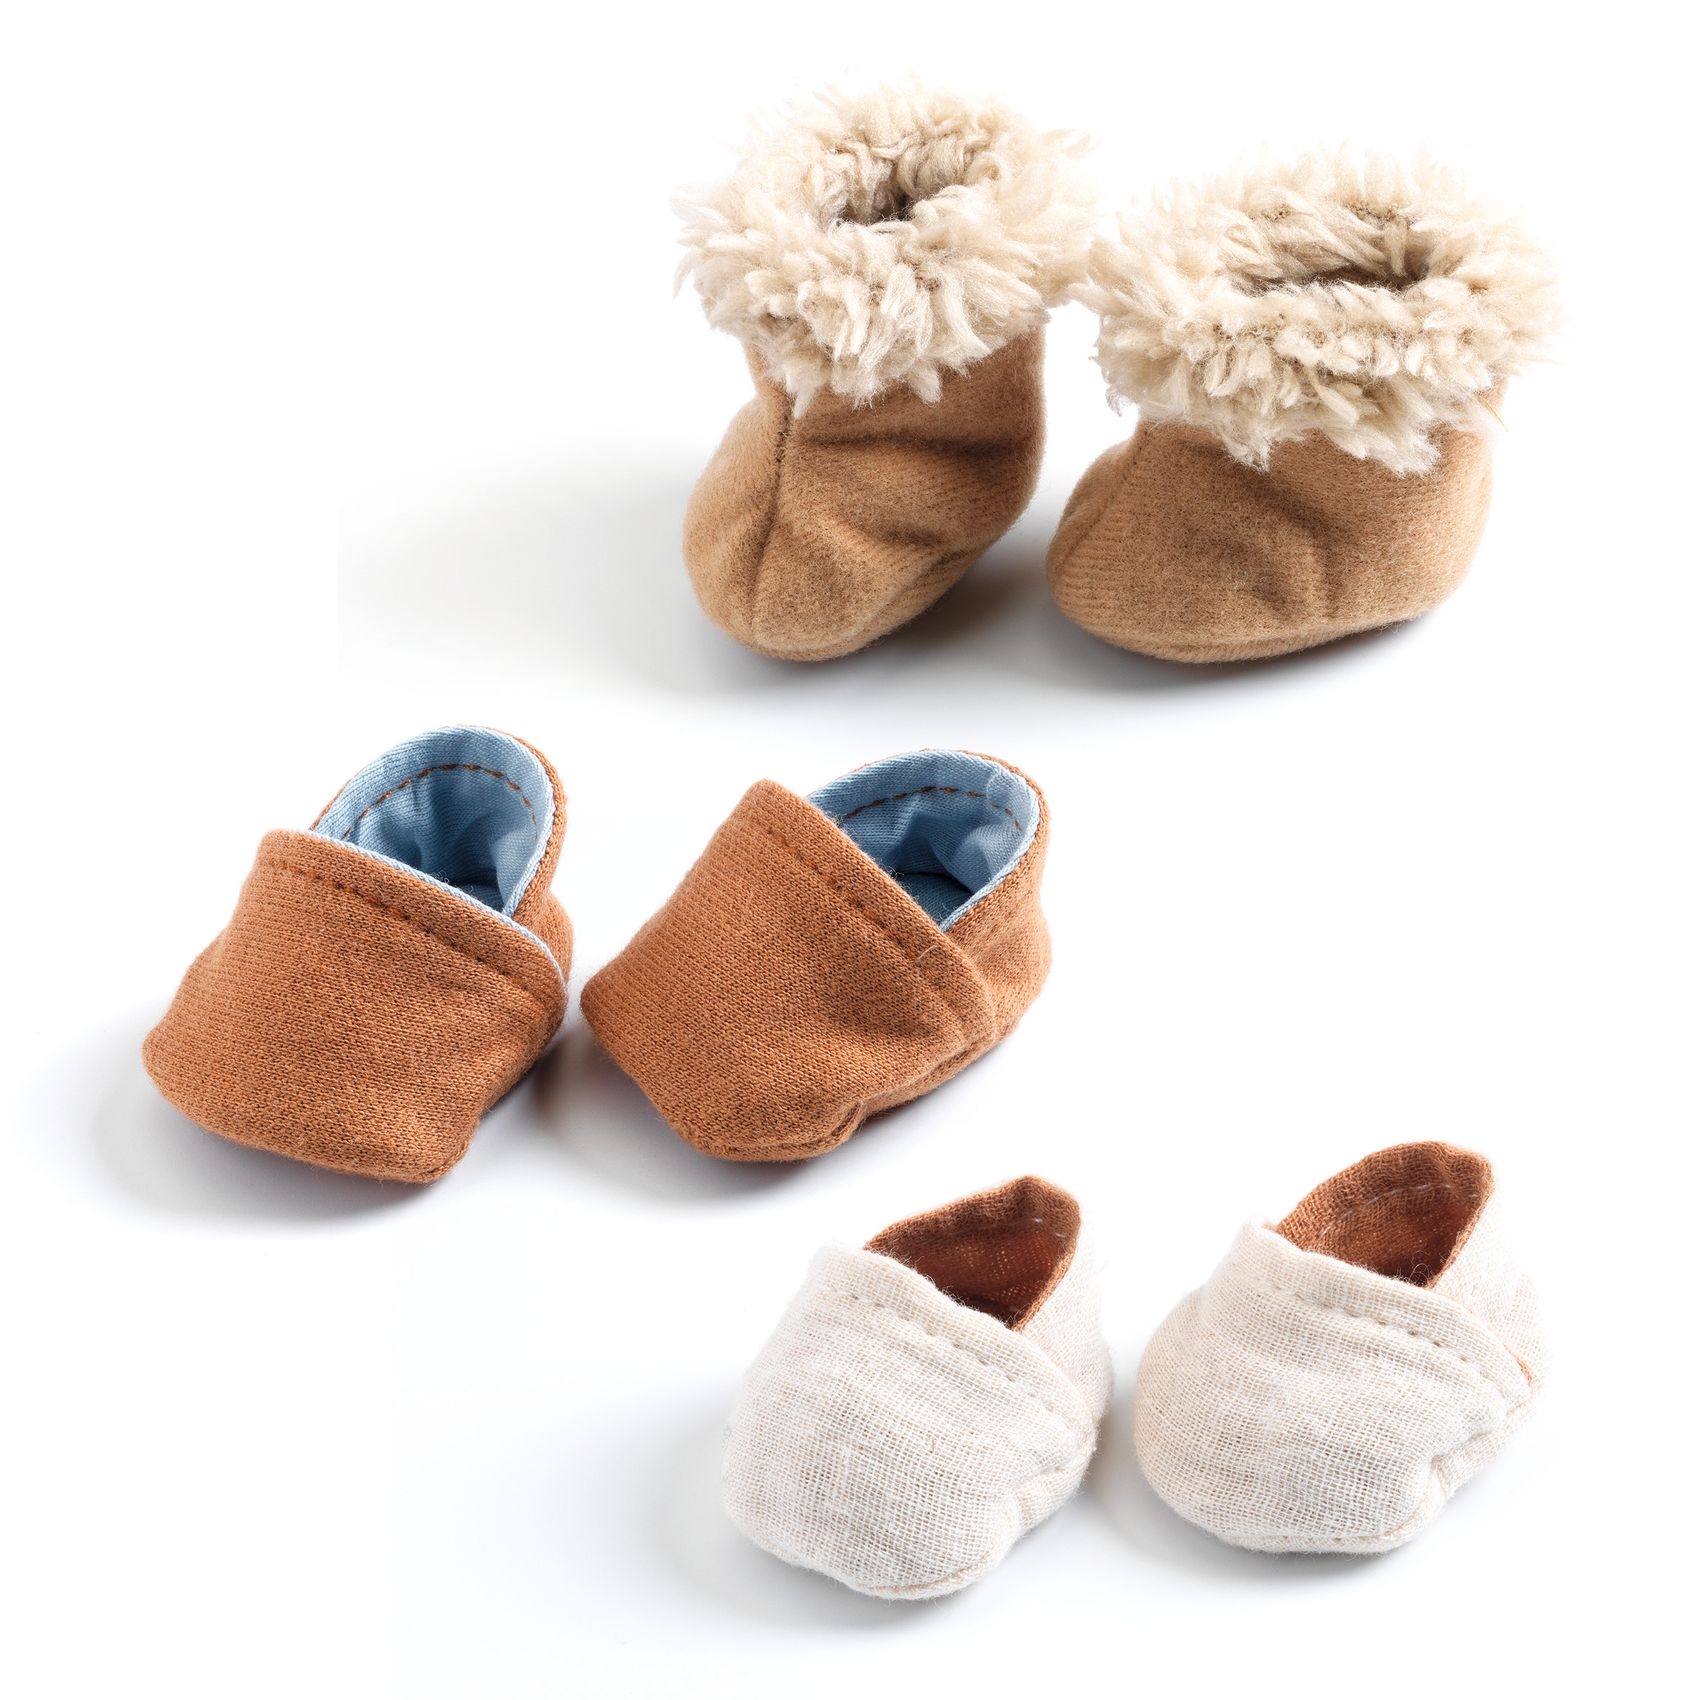 Játékbaba cipő - 3 pár cipőcske - 3 pairs of slippers - 0